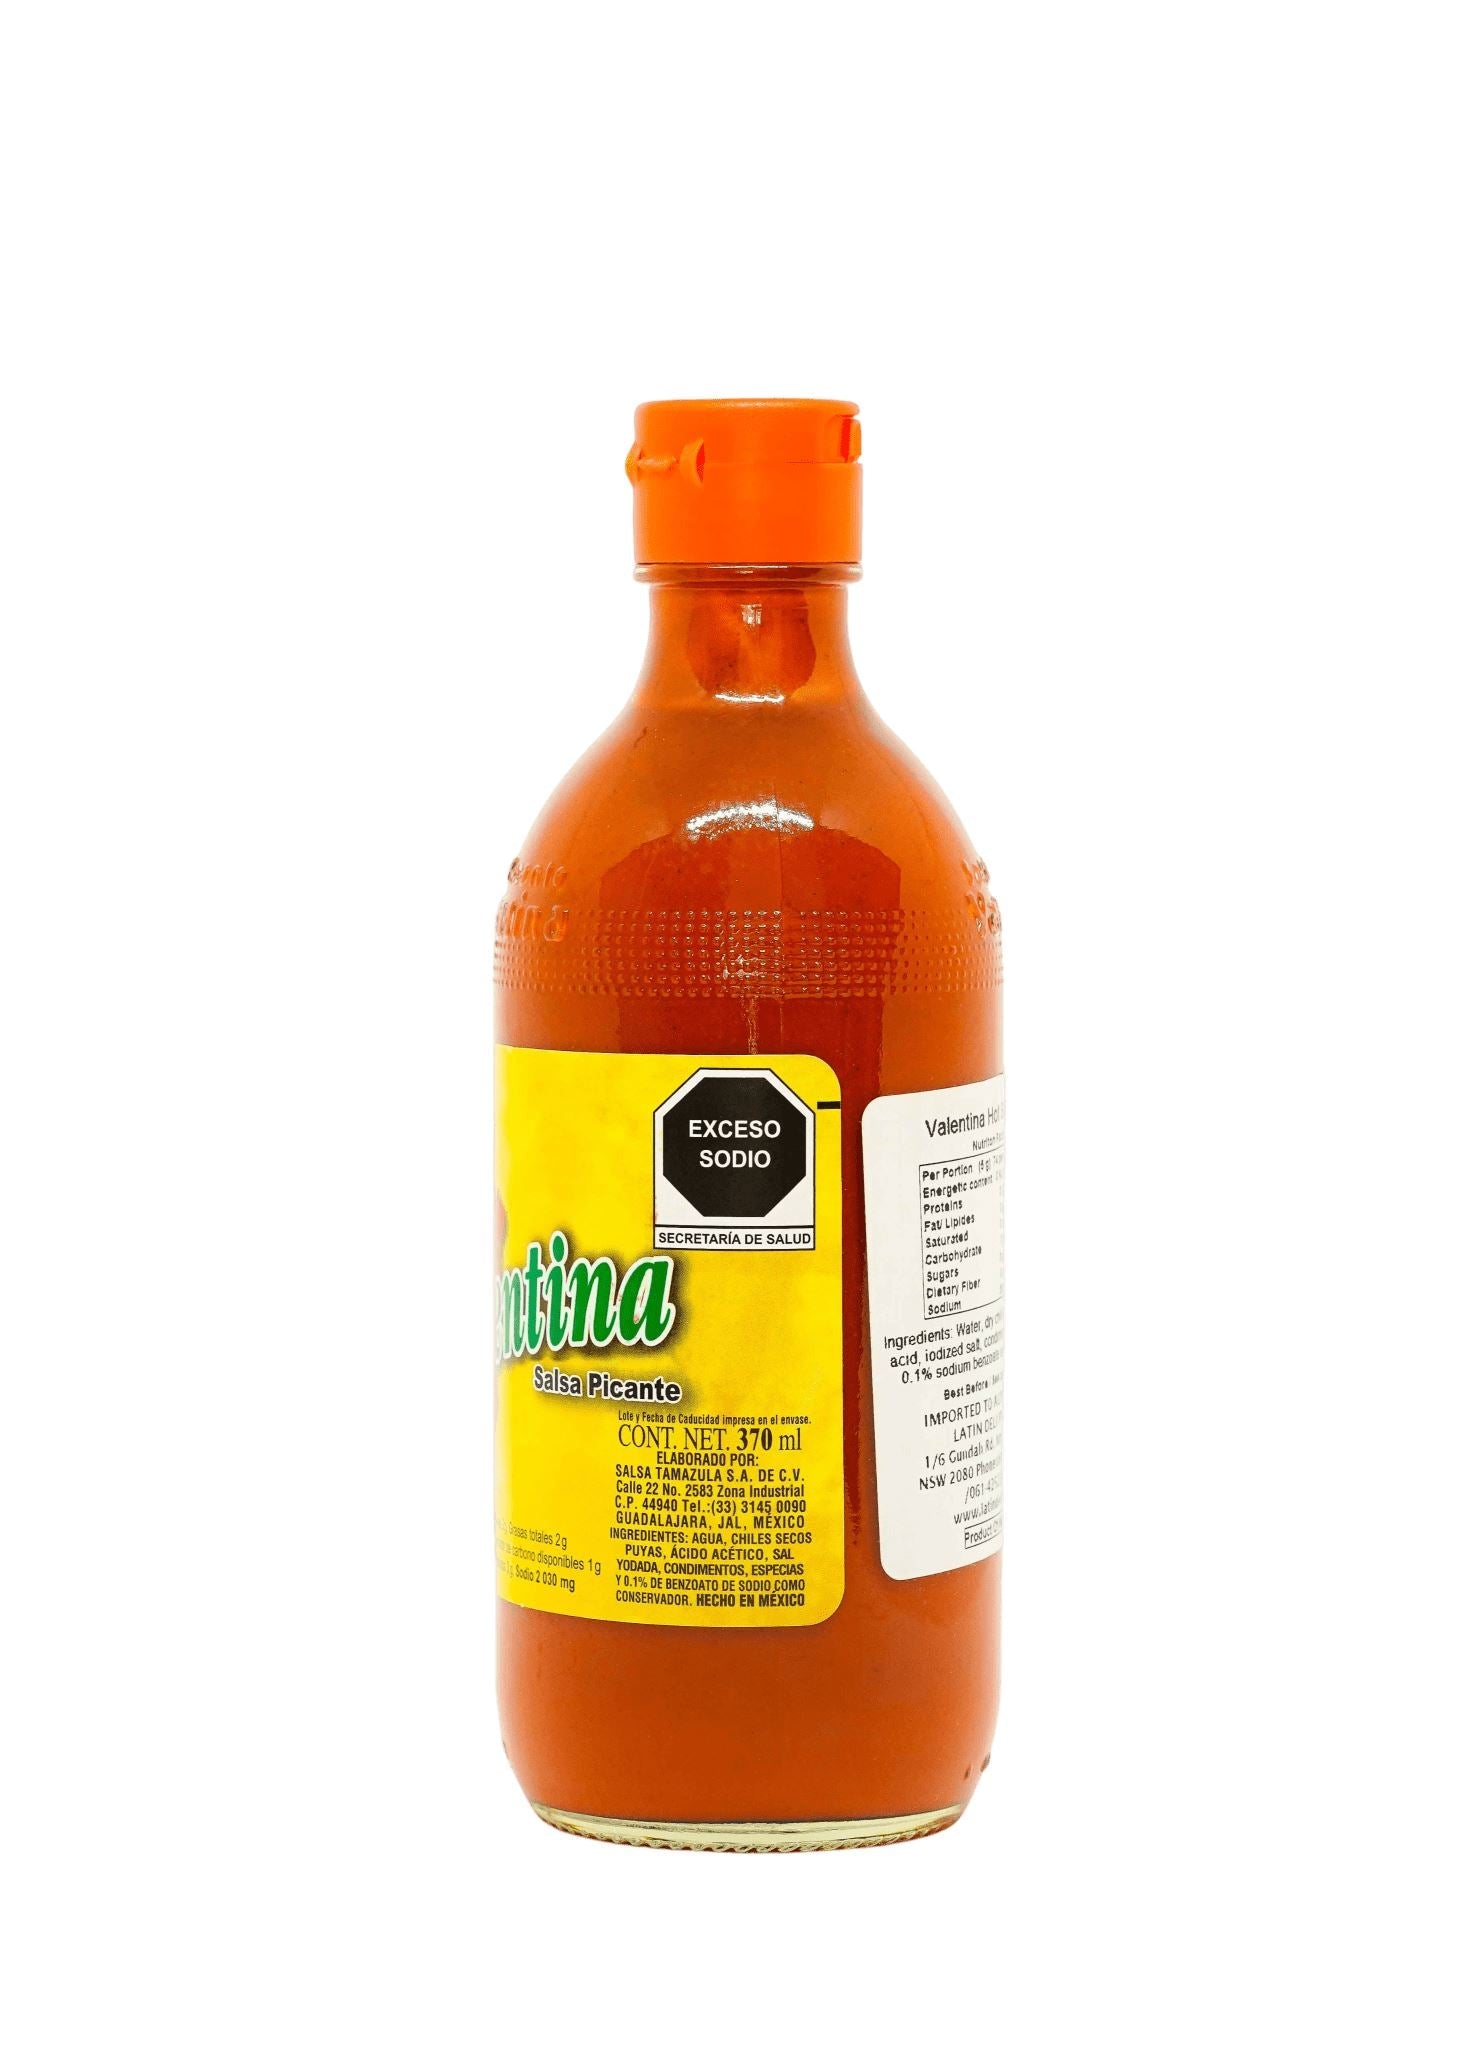 Valentina Hot Sauce - Yellow Label 150ml / 370ml / 1L Sauces Tamazula Group 